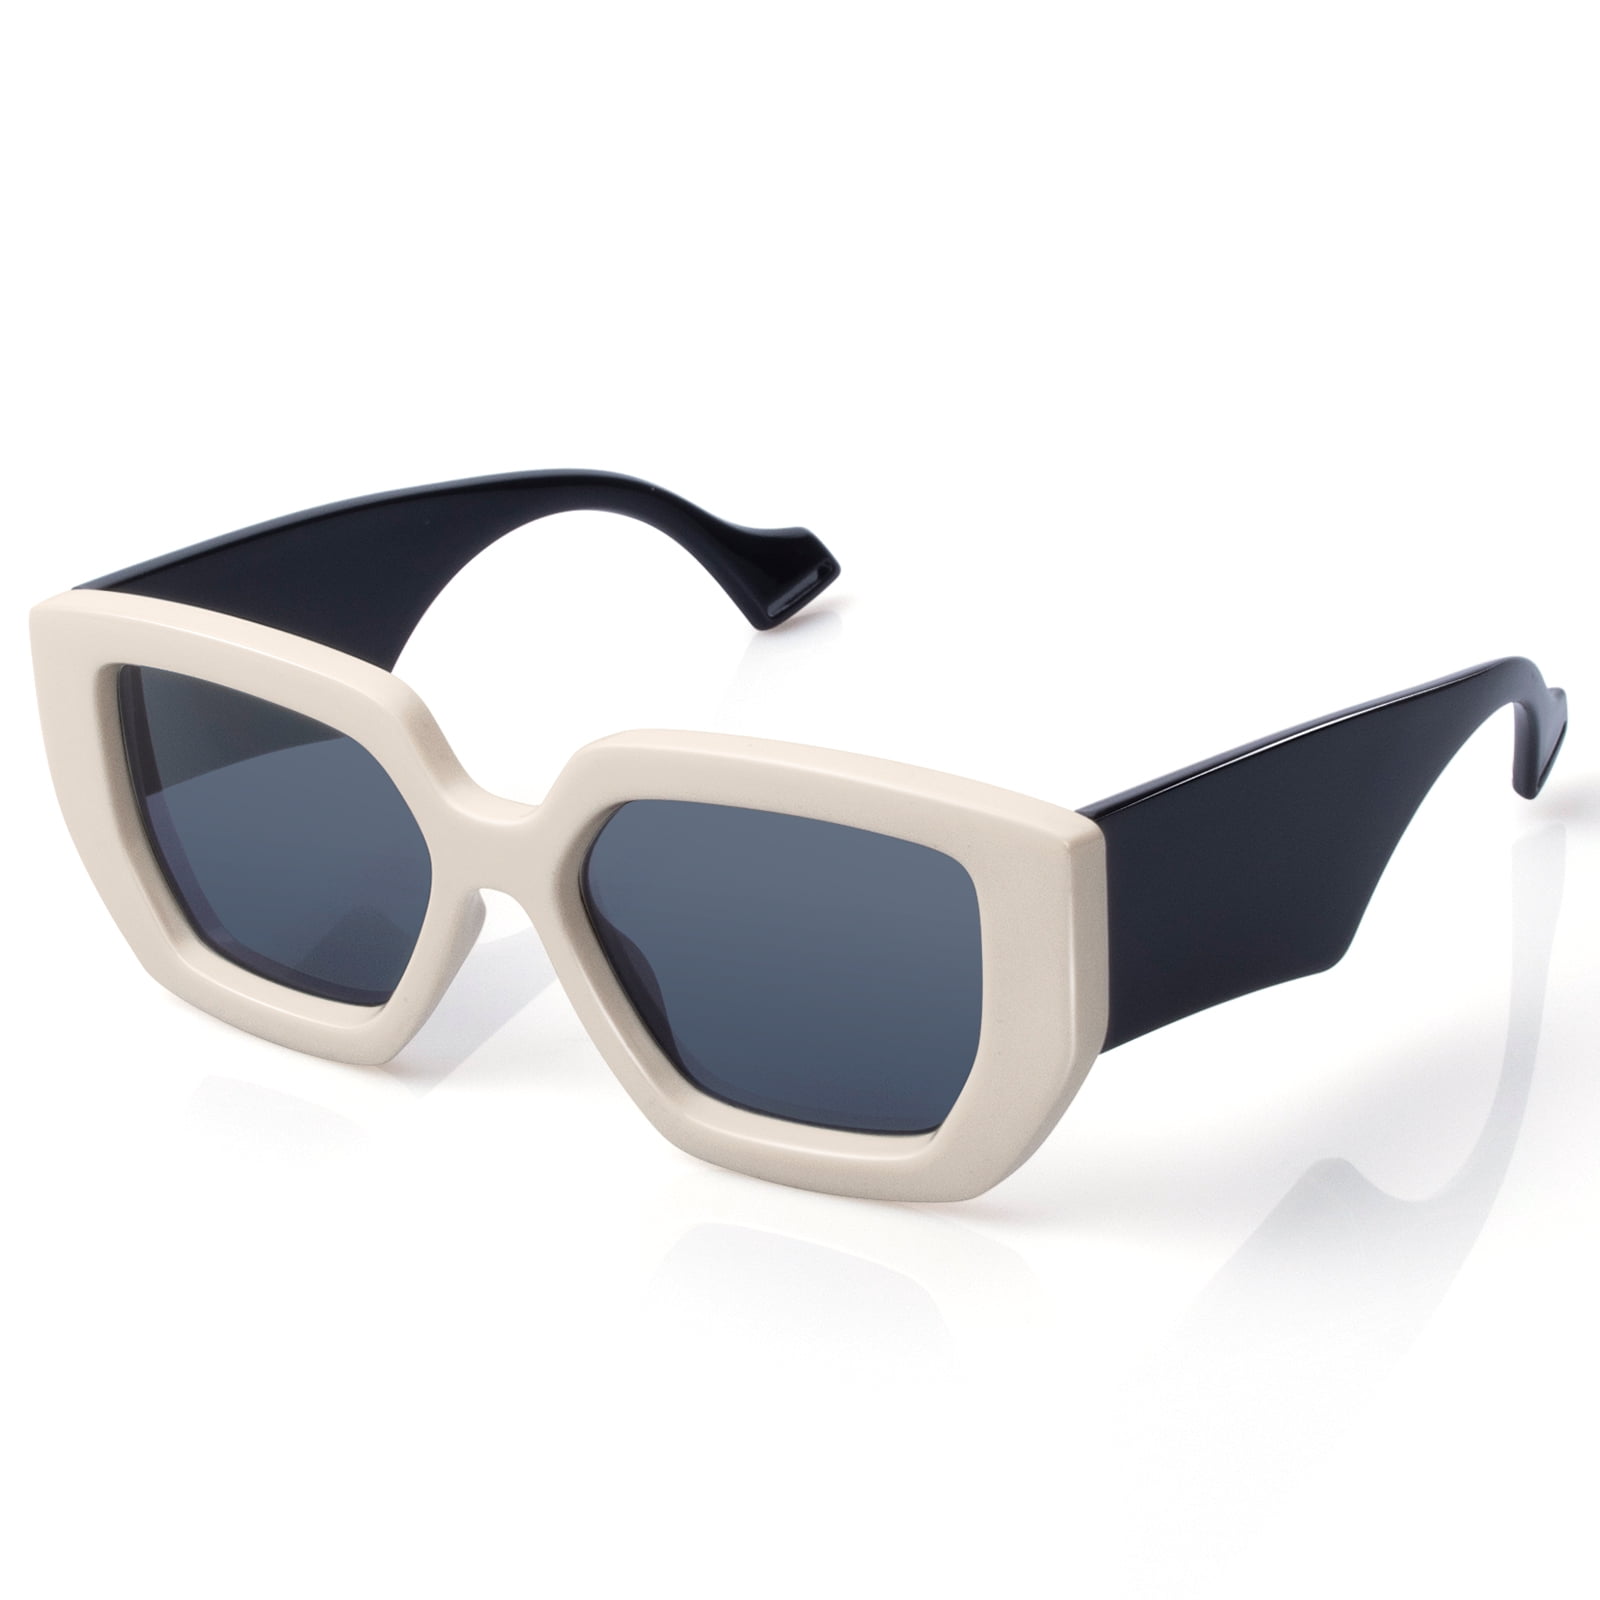 GetUSCart- KALIYADI Polarized Sunglasses Men, Lightweight Mens Sunglasses  Polarized UV Protection Driving Fishing Golf (Black/Black/Brown)